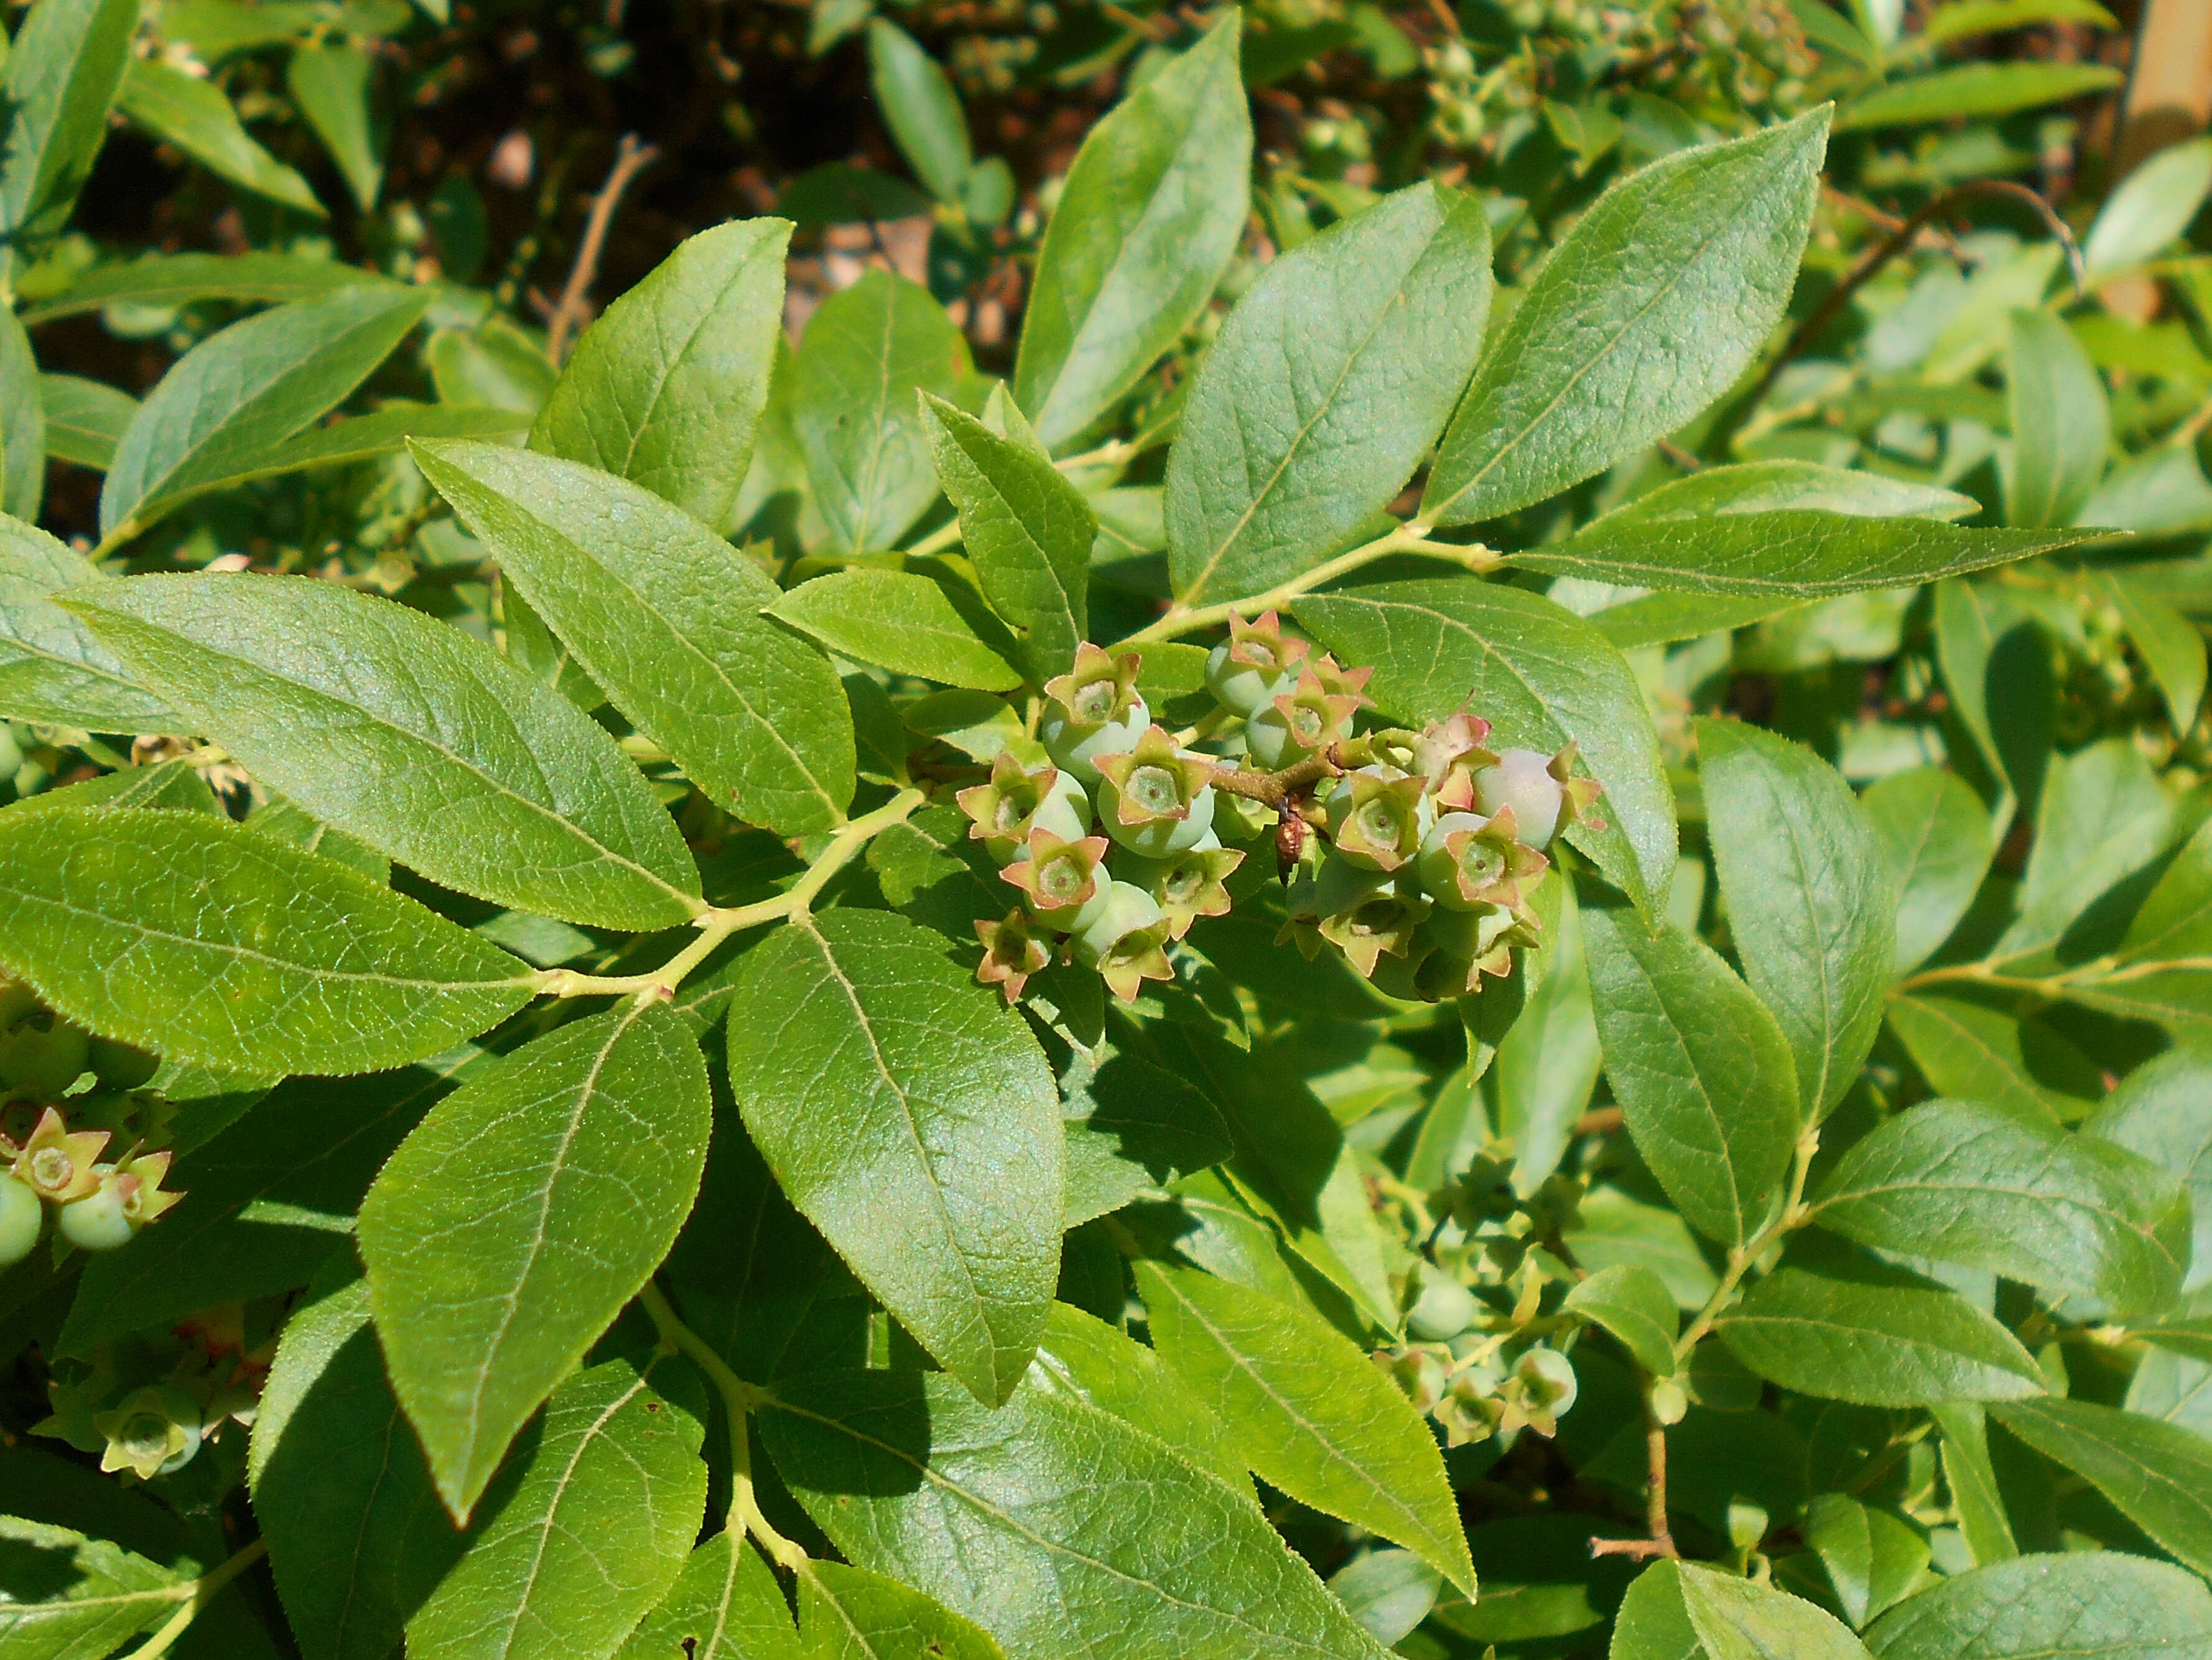 Image of Blue Ridge blueberry